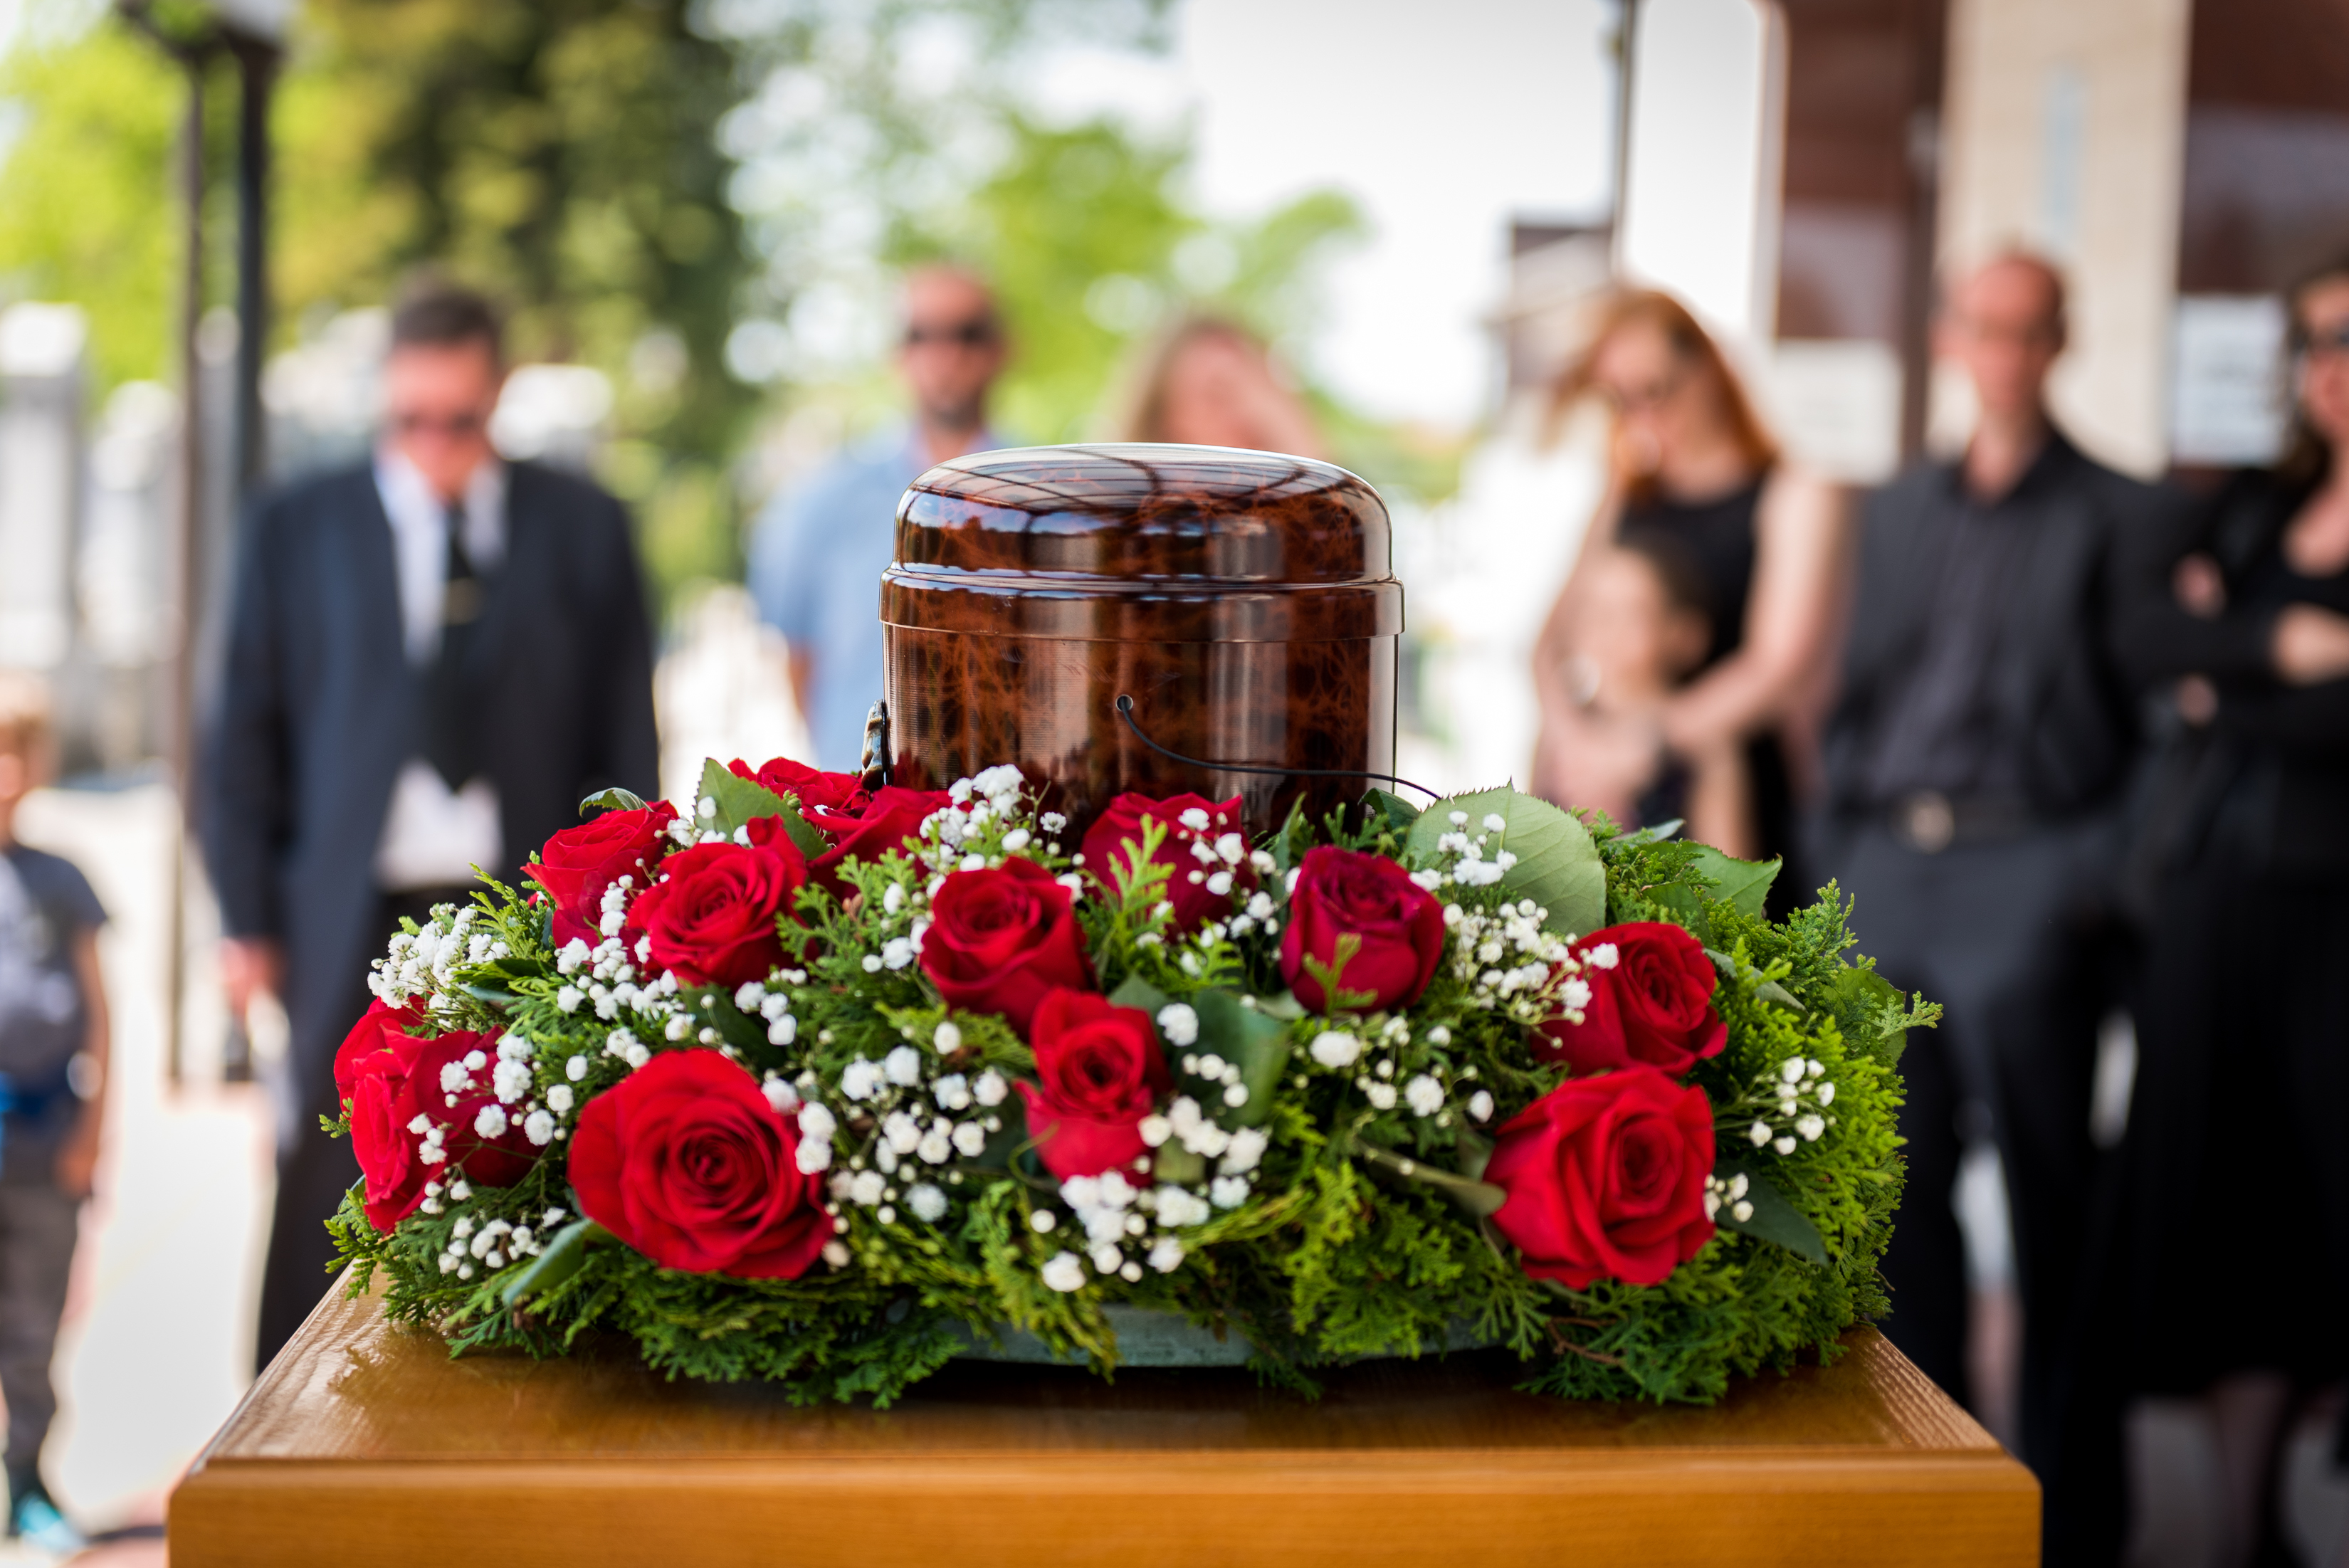 Personnes assistant à un enterrement | Source : Shutterstock